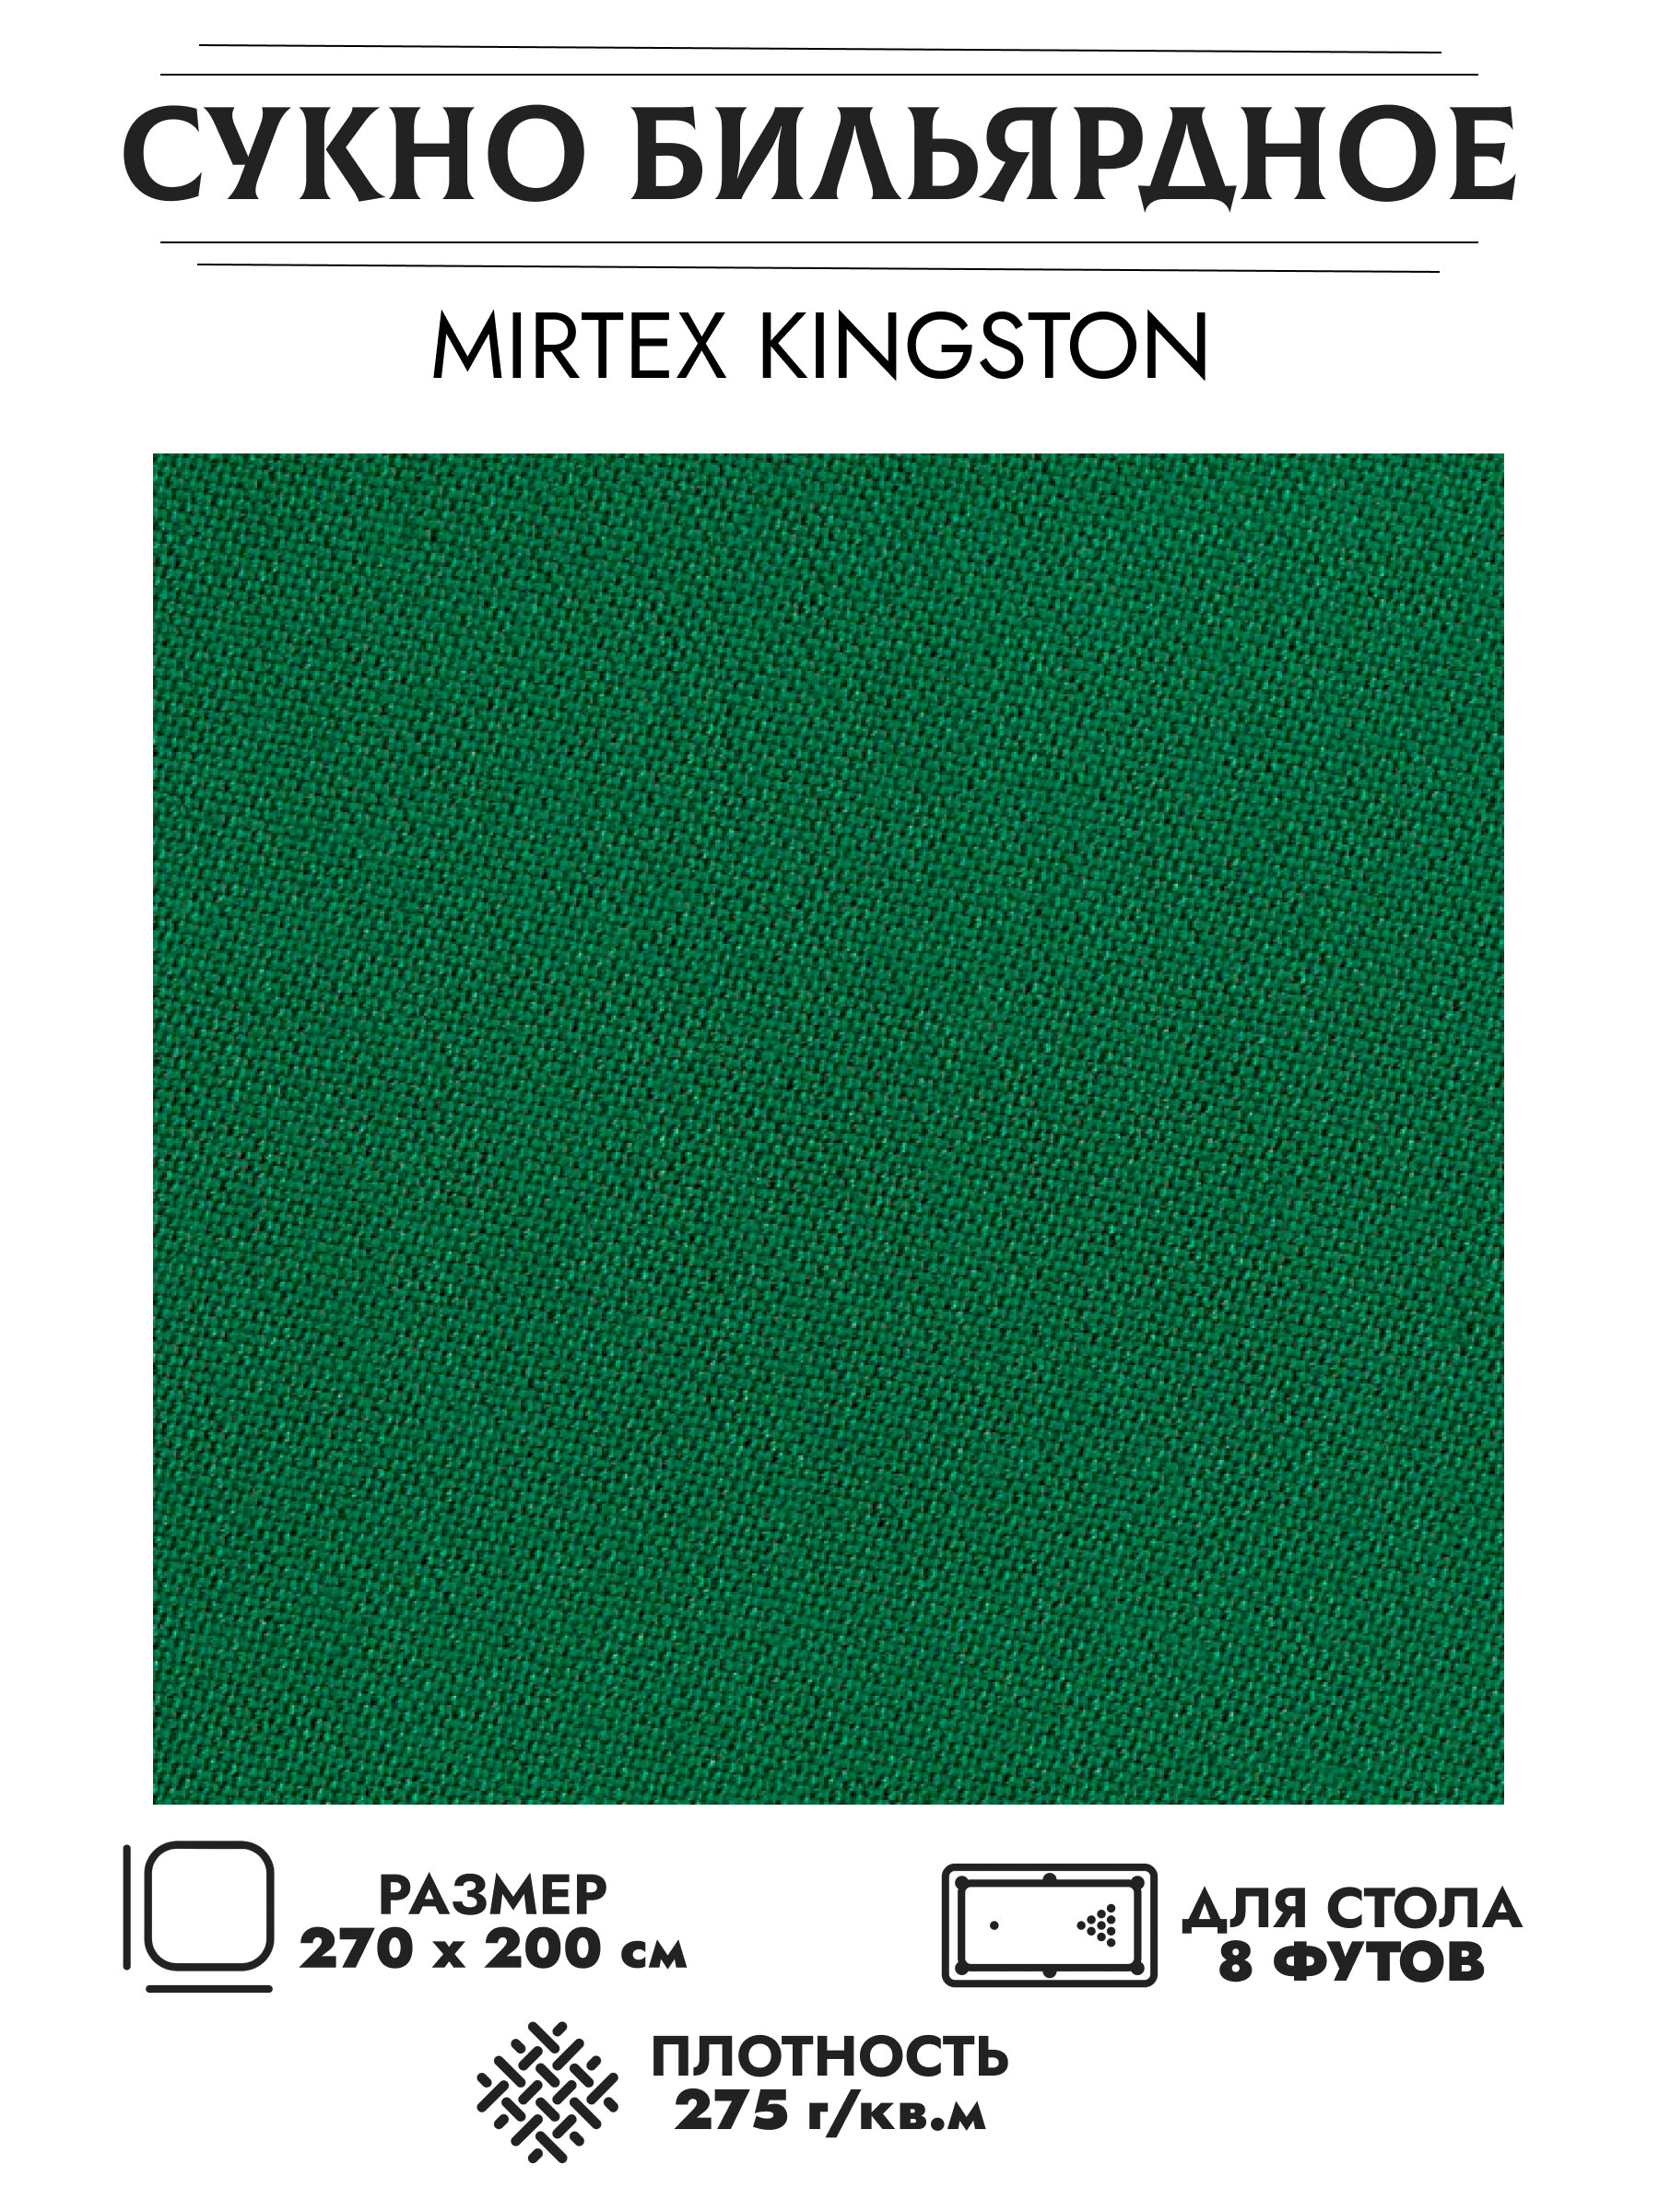 Mirtex Kingston бильярдное сукно для столов 8 футов (270 см х 200 см)